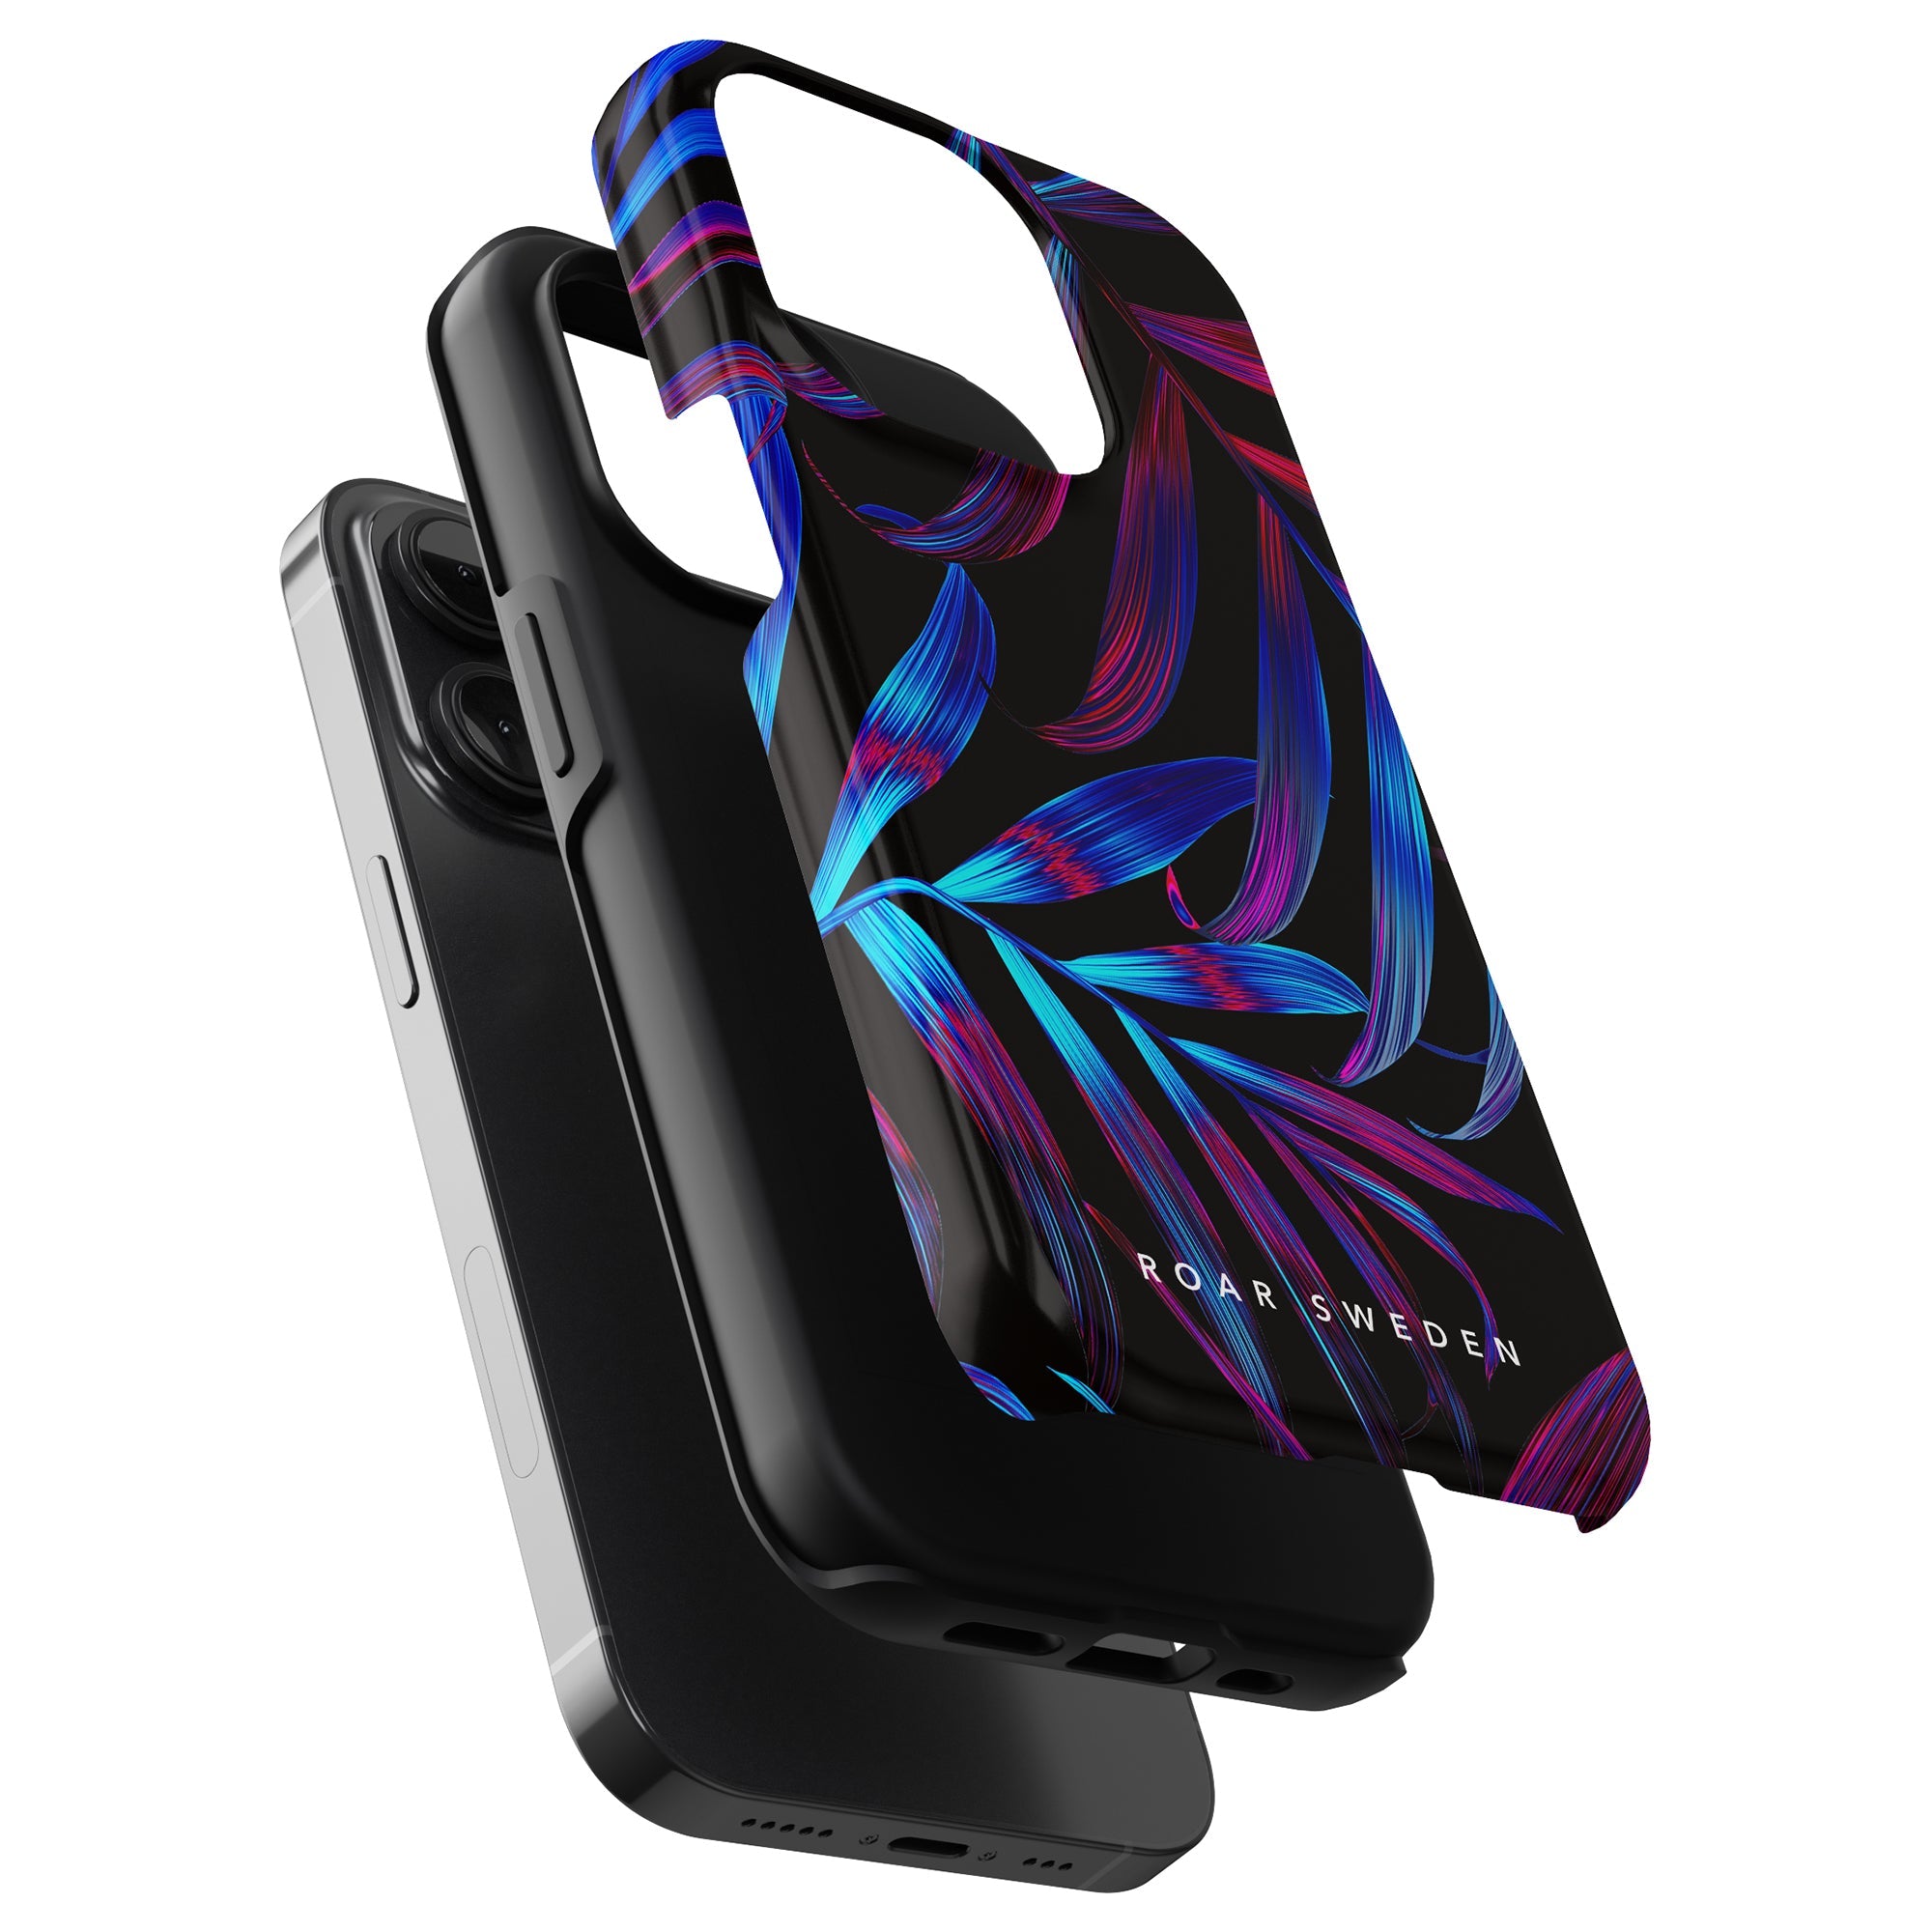 Ett tufft fodral för telefon (telefon) - iPhone 11 Pro, med en fantastisk lila och blå bladdesign inspirerad av Bioluminescence - Tufft fodral.